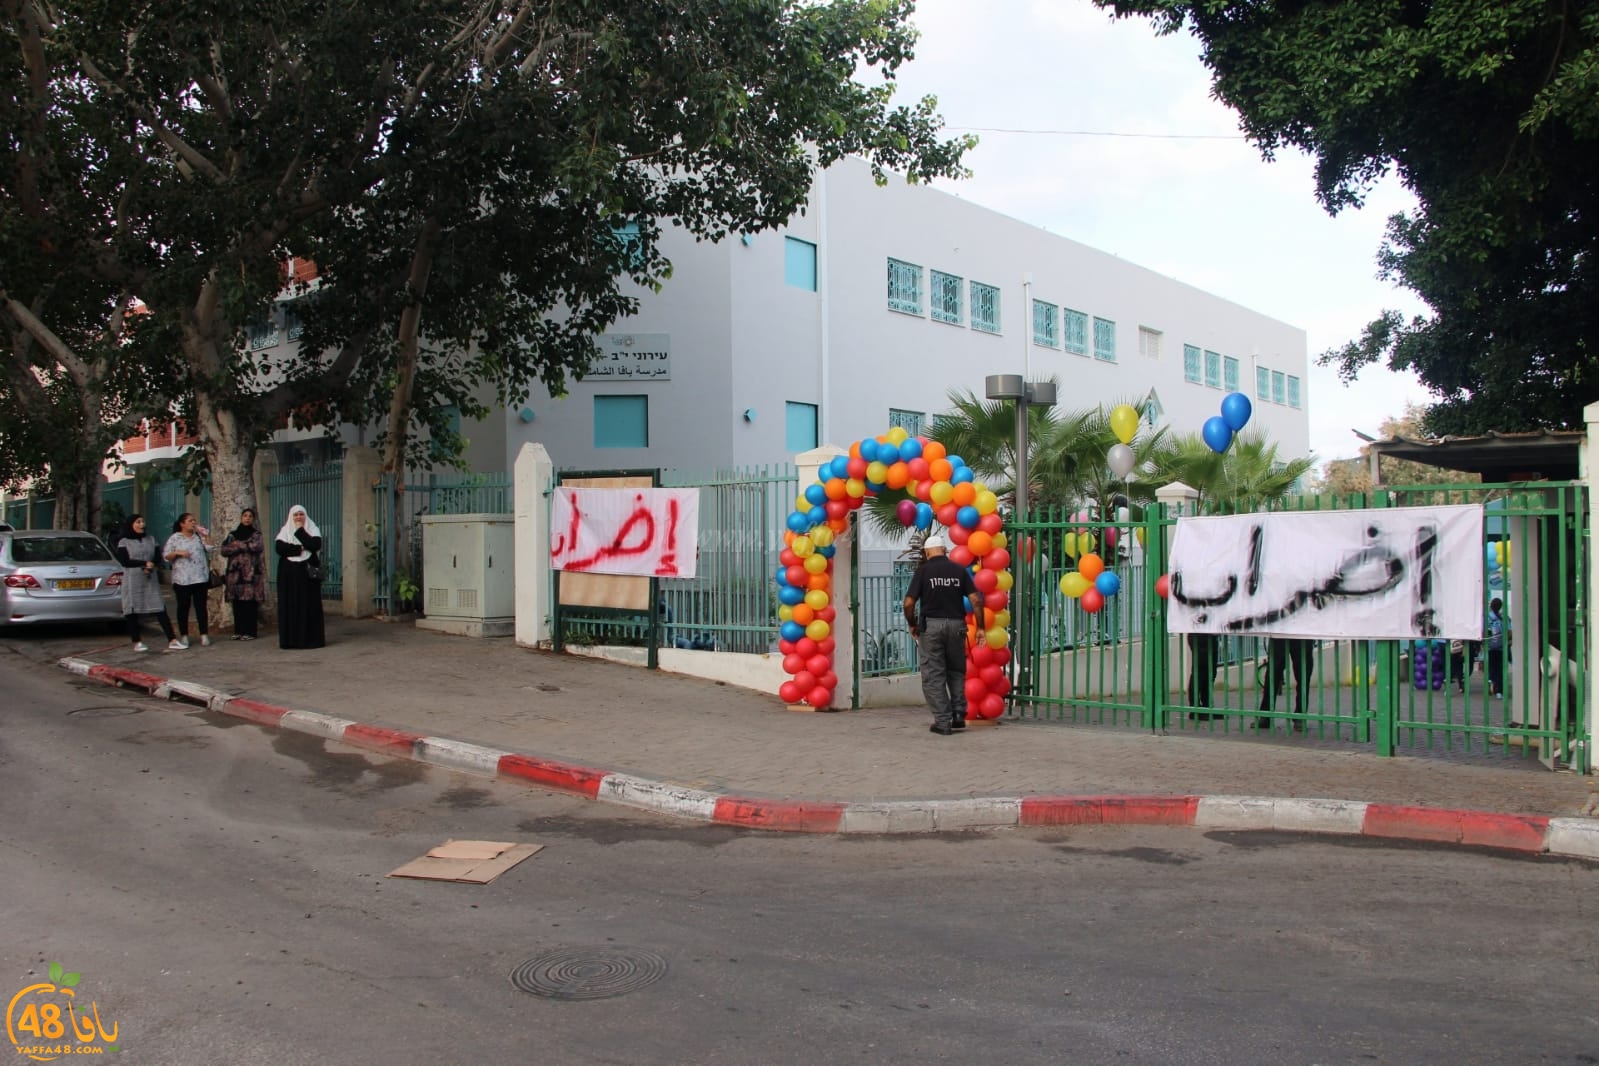   اليوم: إضراب في مدرسة الثانوية الشاملة وانتظام الدراسة في بقية مدارس يافا